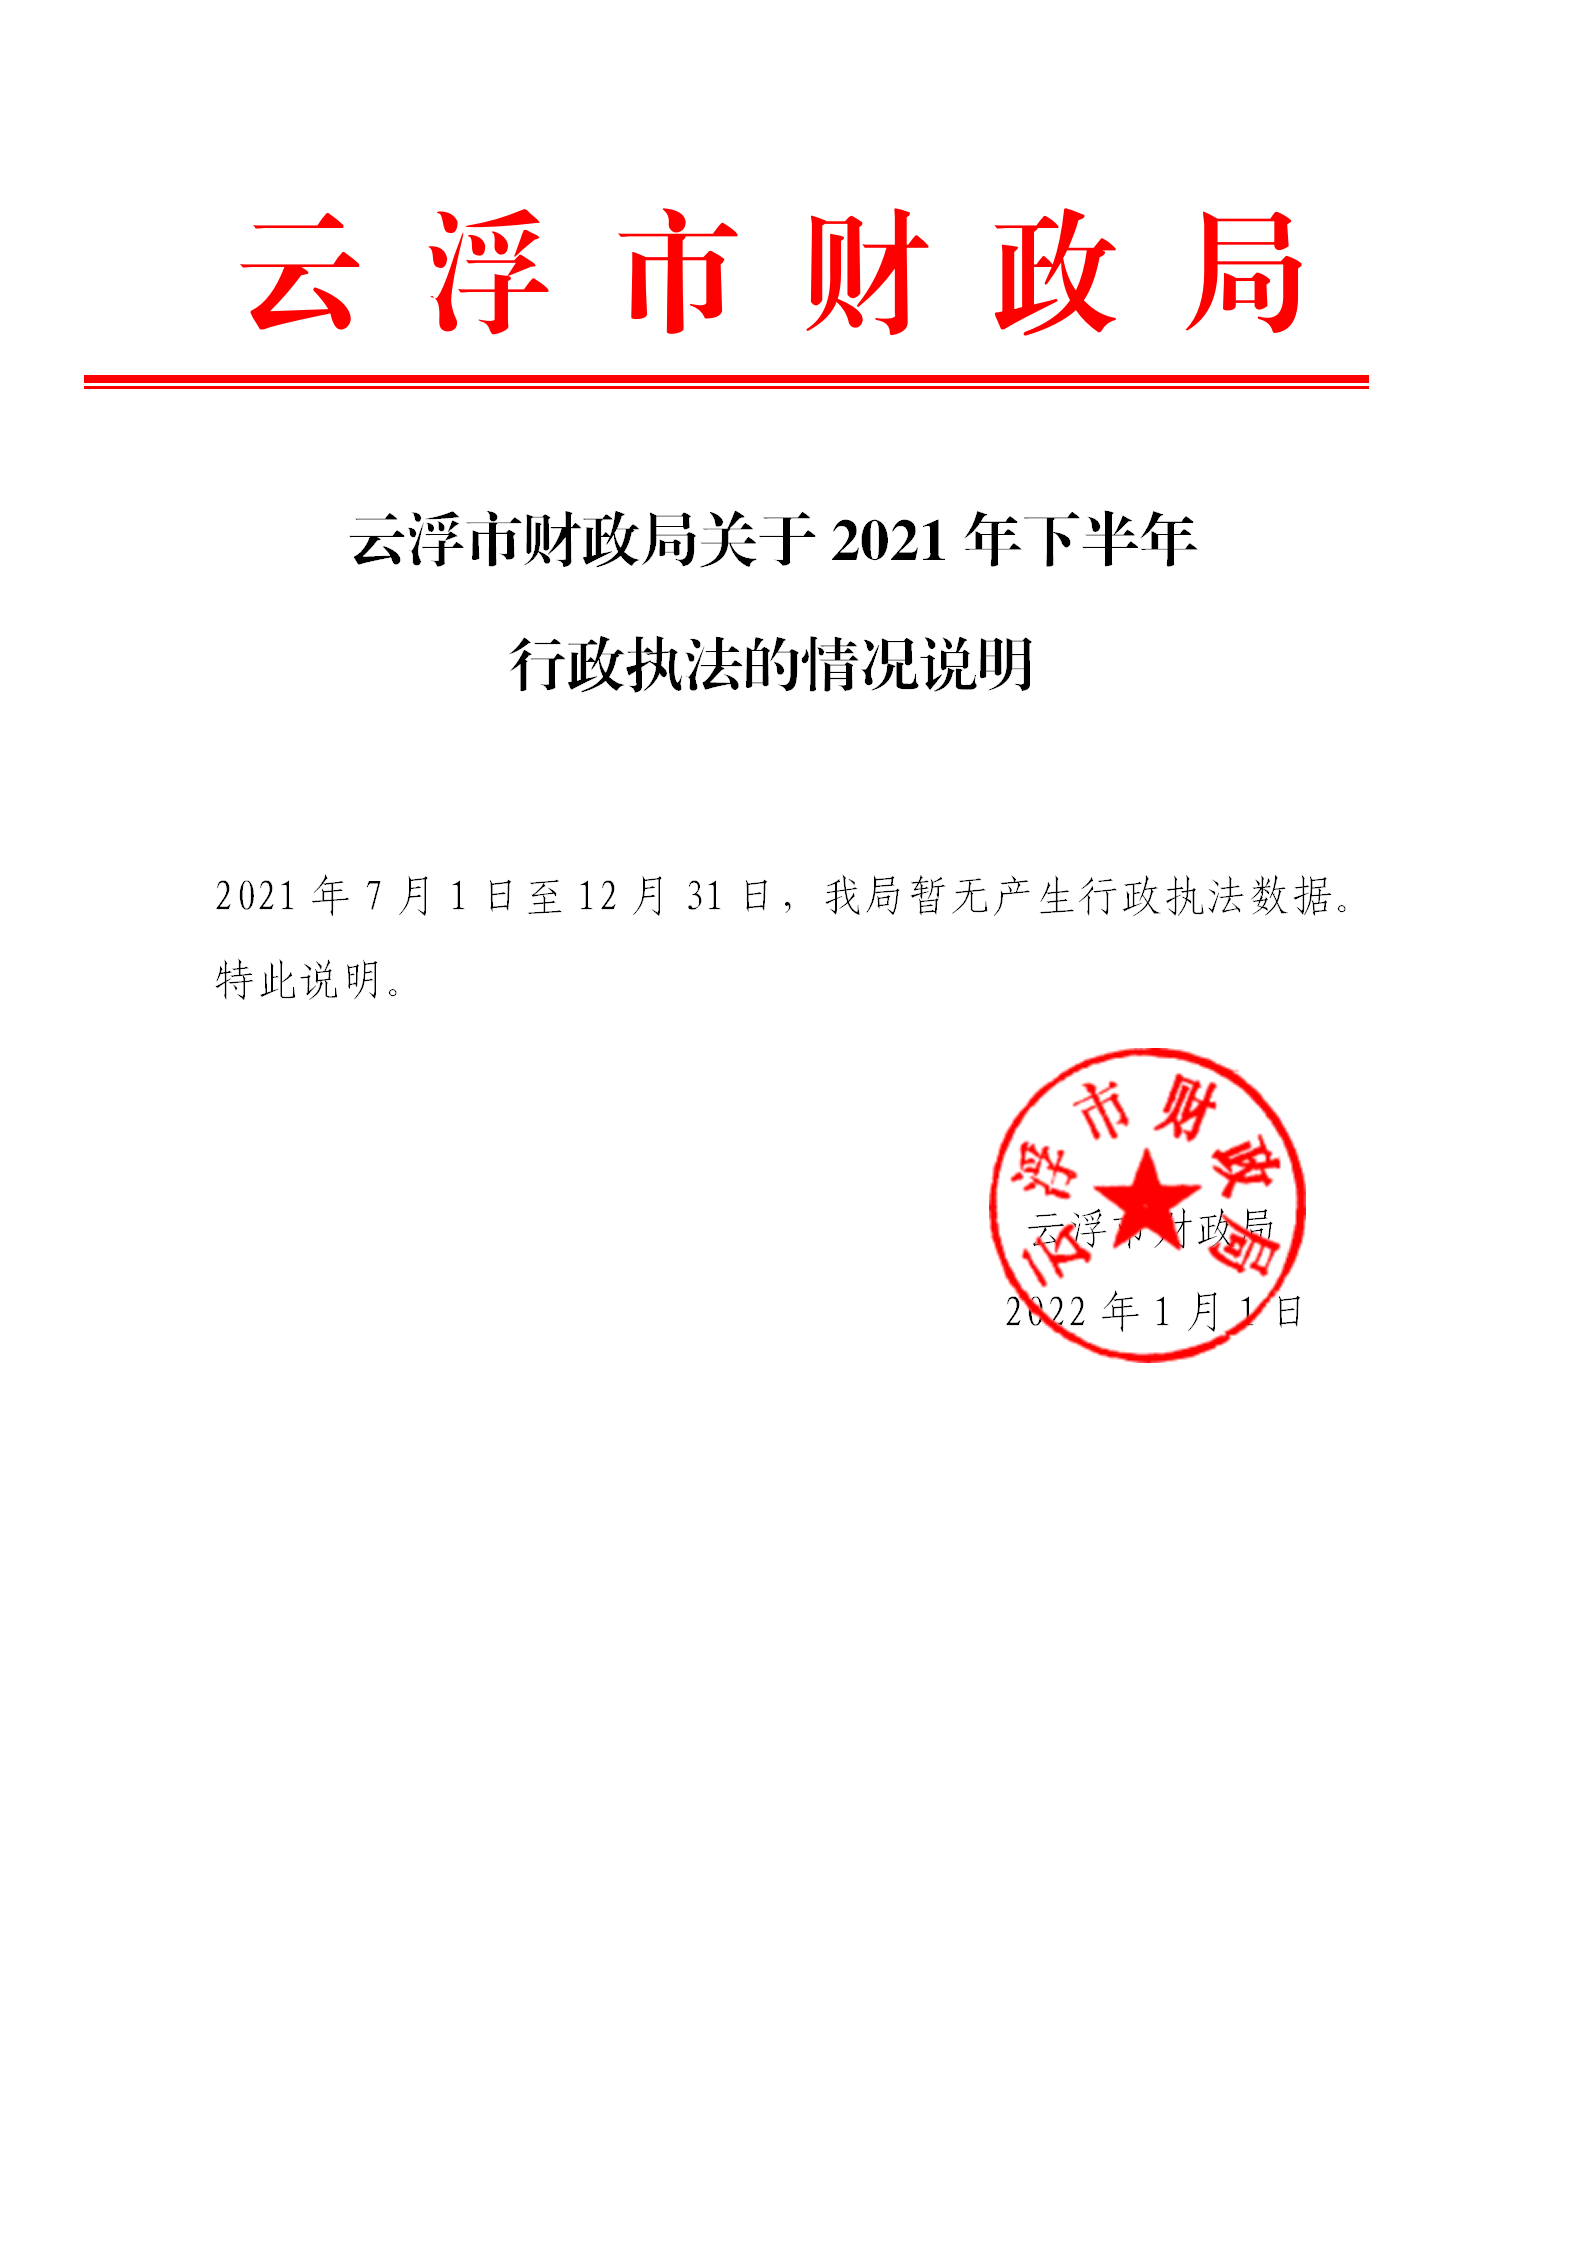 云浮市财政局关于2021年下半年行政执法的情况说明_01.png